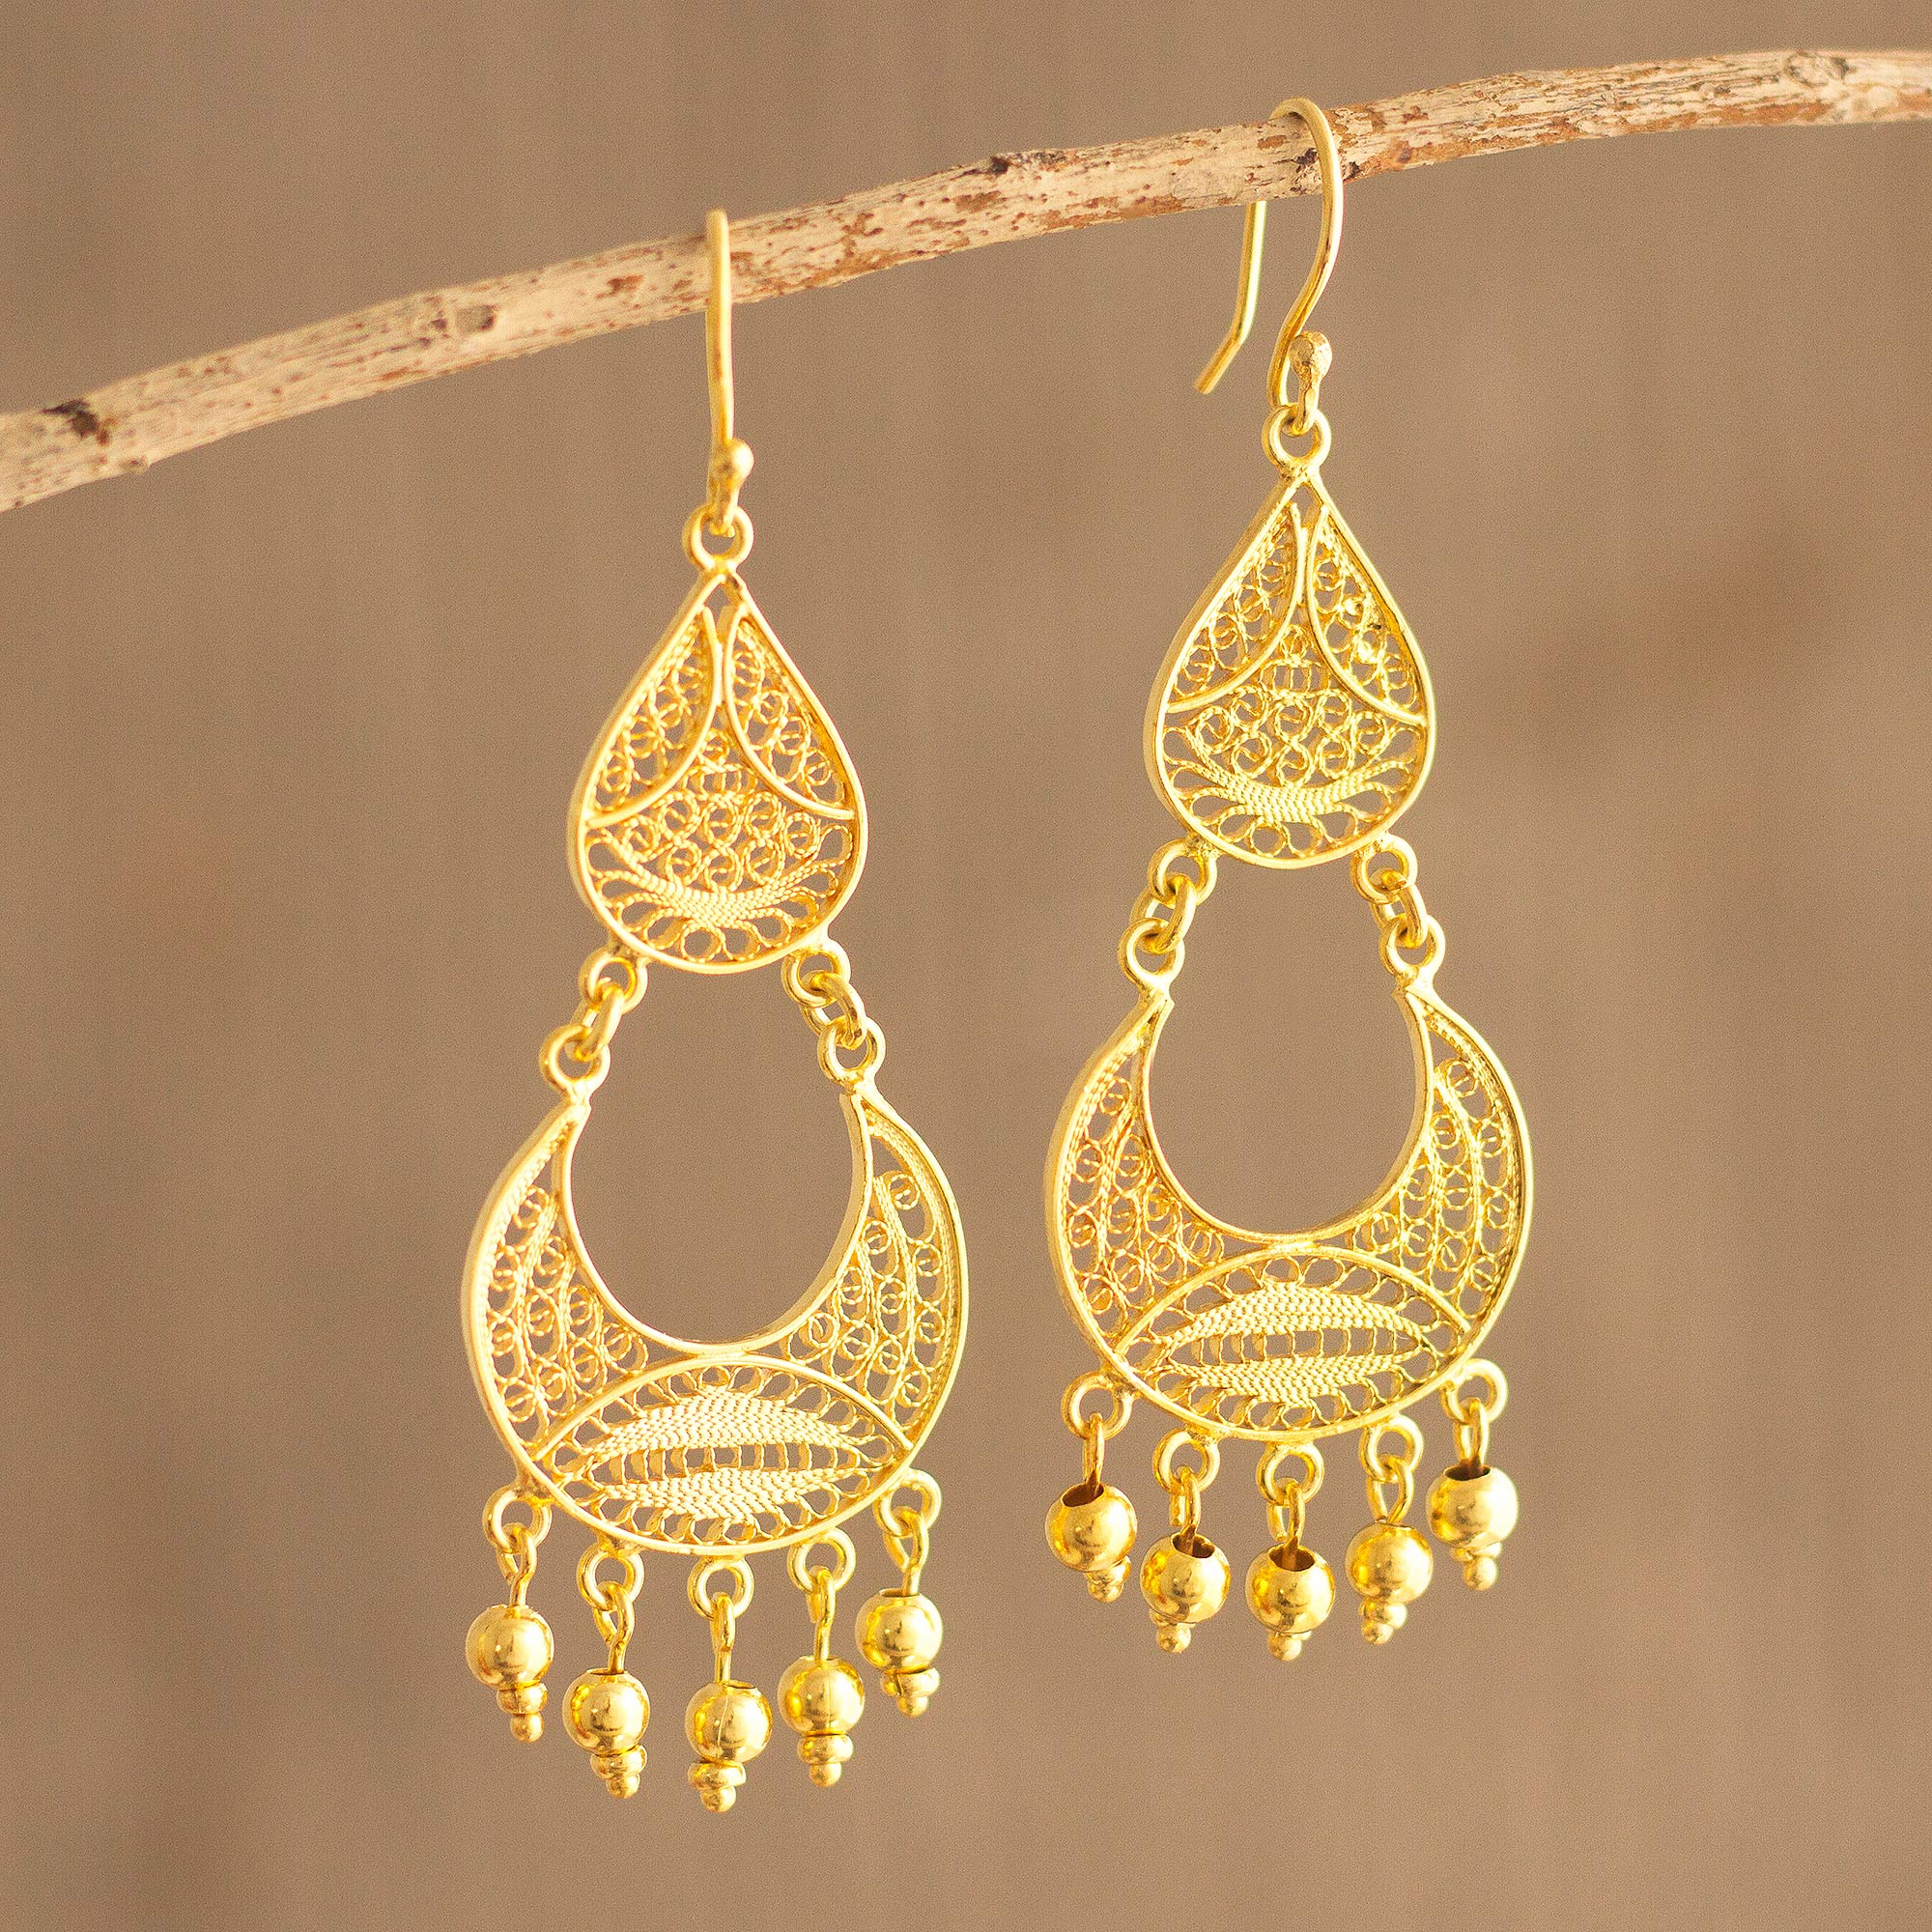 14K Solid Gold Black Square Filigree Earrings Jewellery Earrings Dangle & Drop Earrings 